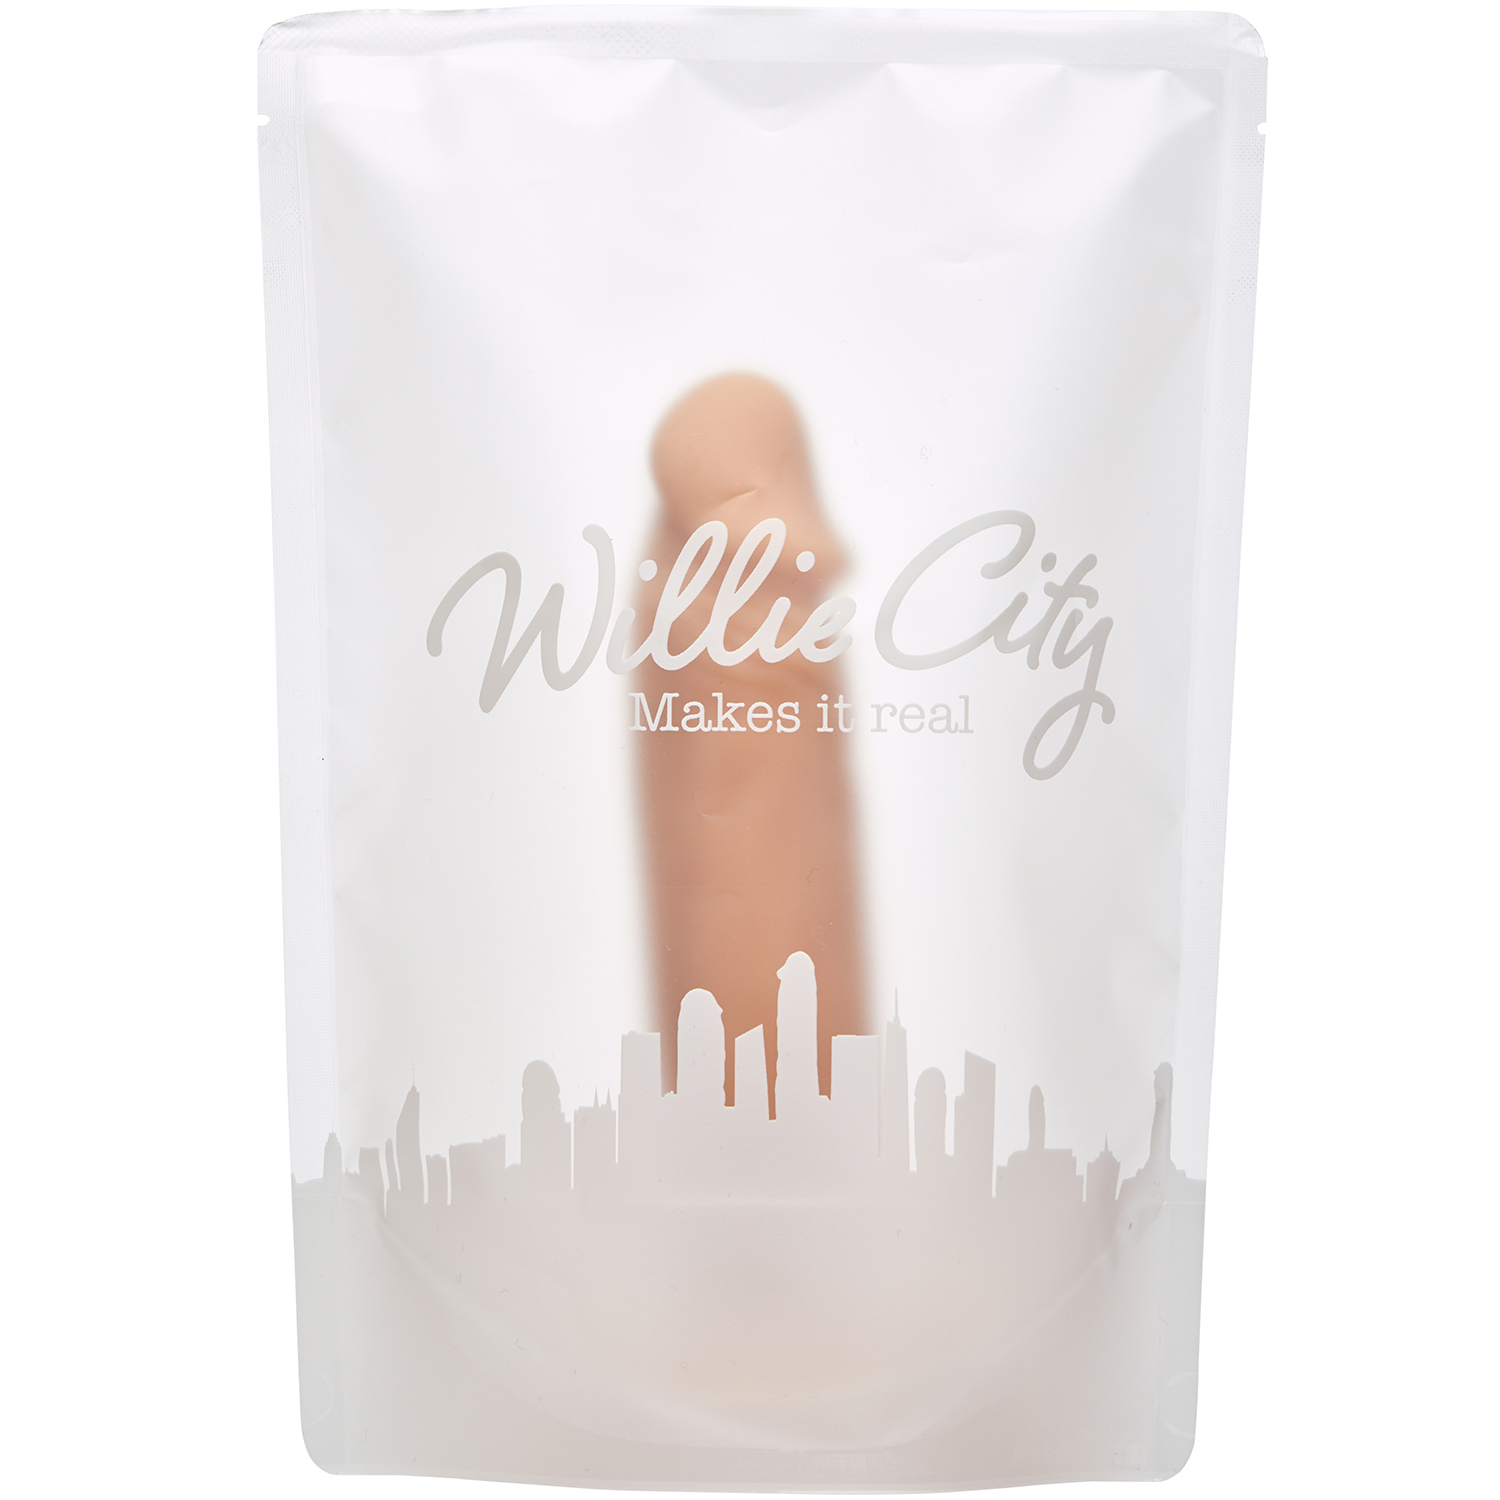 Willie City Lover Realistisk Dildo med Sugekop 19 cm thumbnail